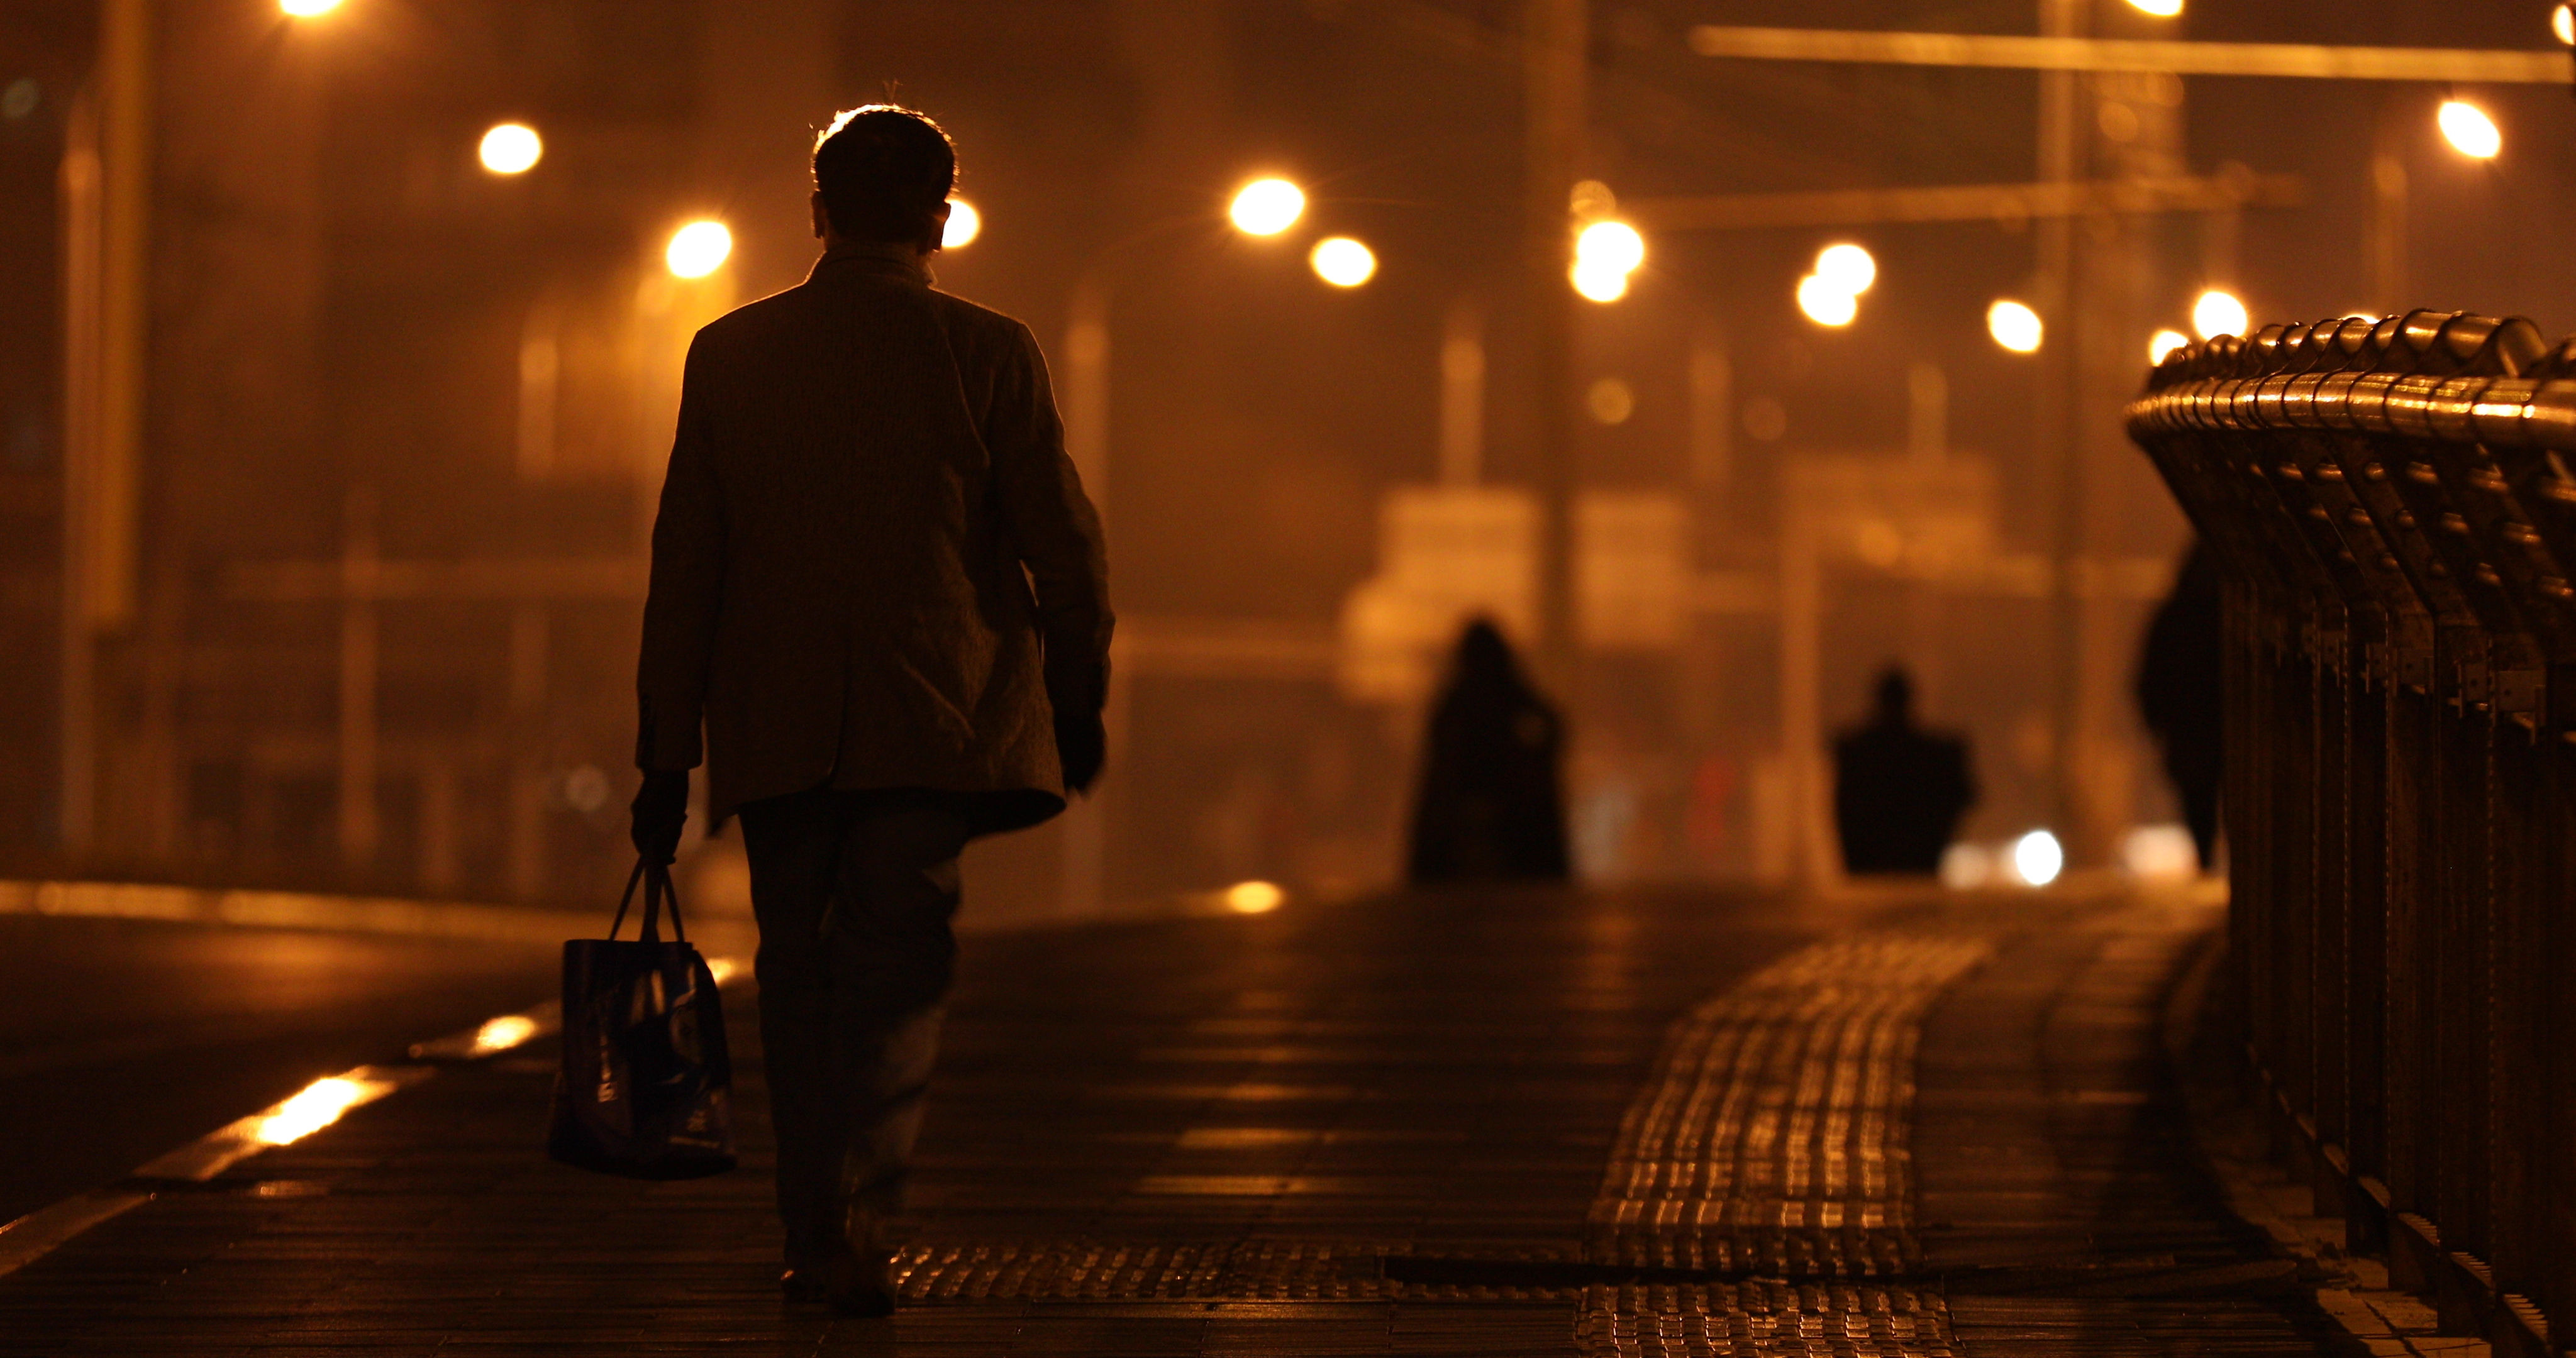 夜晚深夜一个人走路回家劳累背影生活压力人物夜间街道街景夜景孤独